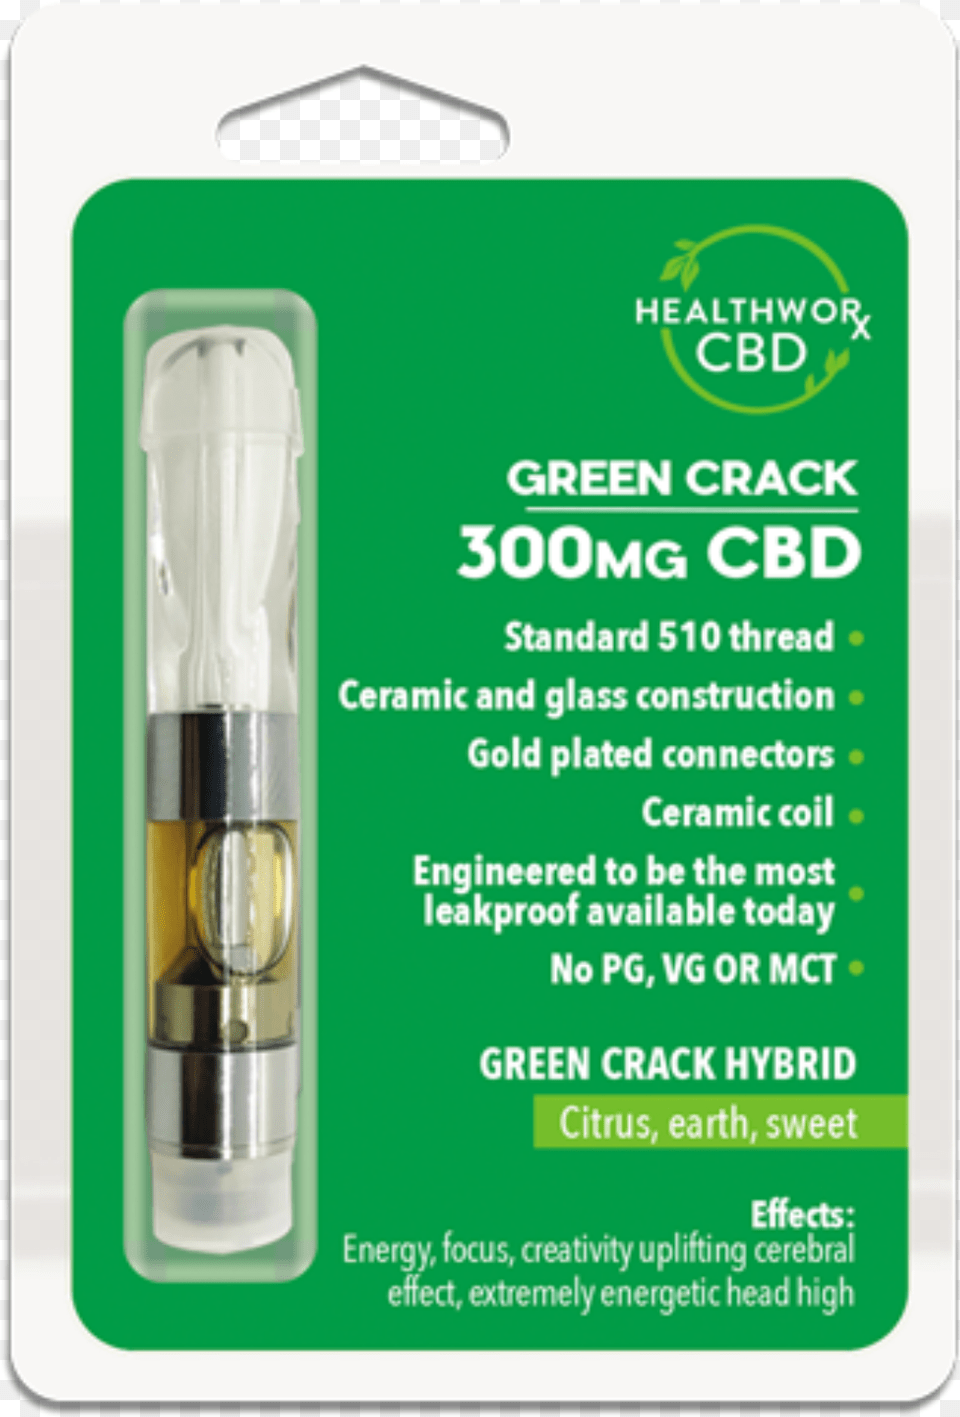 Green Crack 300mg Cbd Vaporizer Pen Cartridge By Healthworxcbd Compact Fluorescent Lamp, Light Free Png